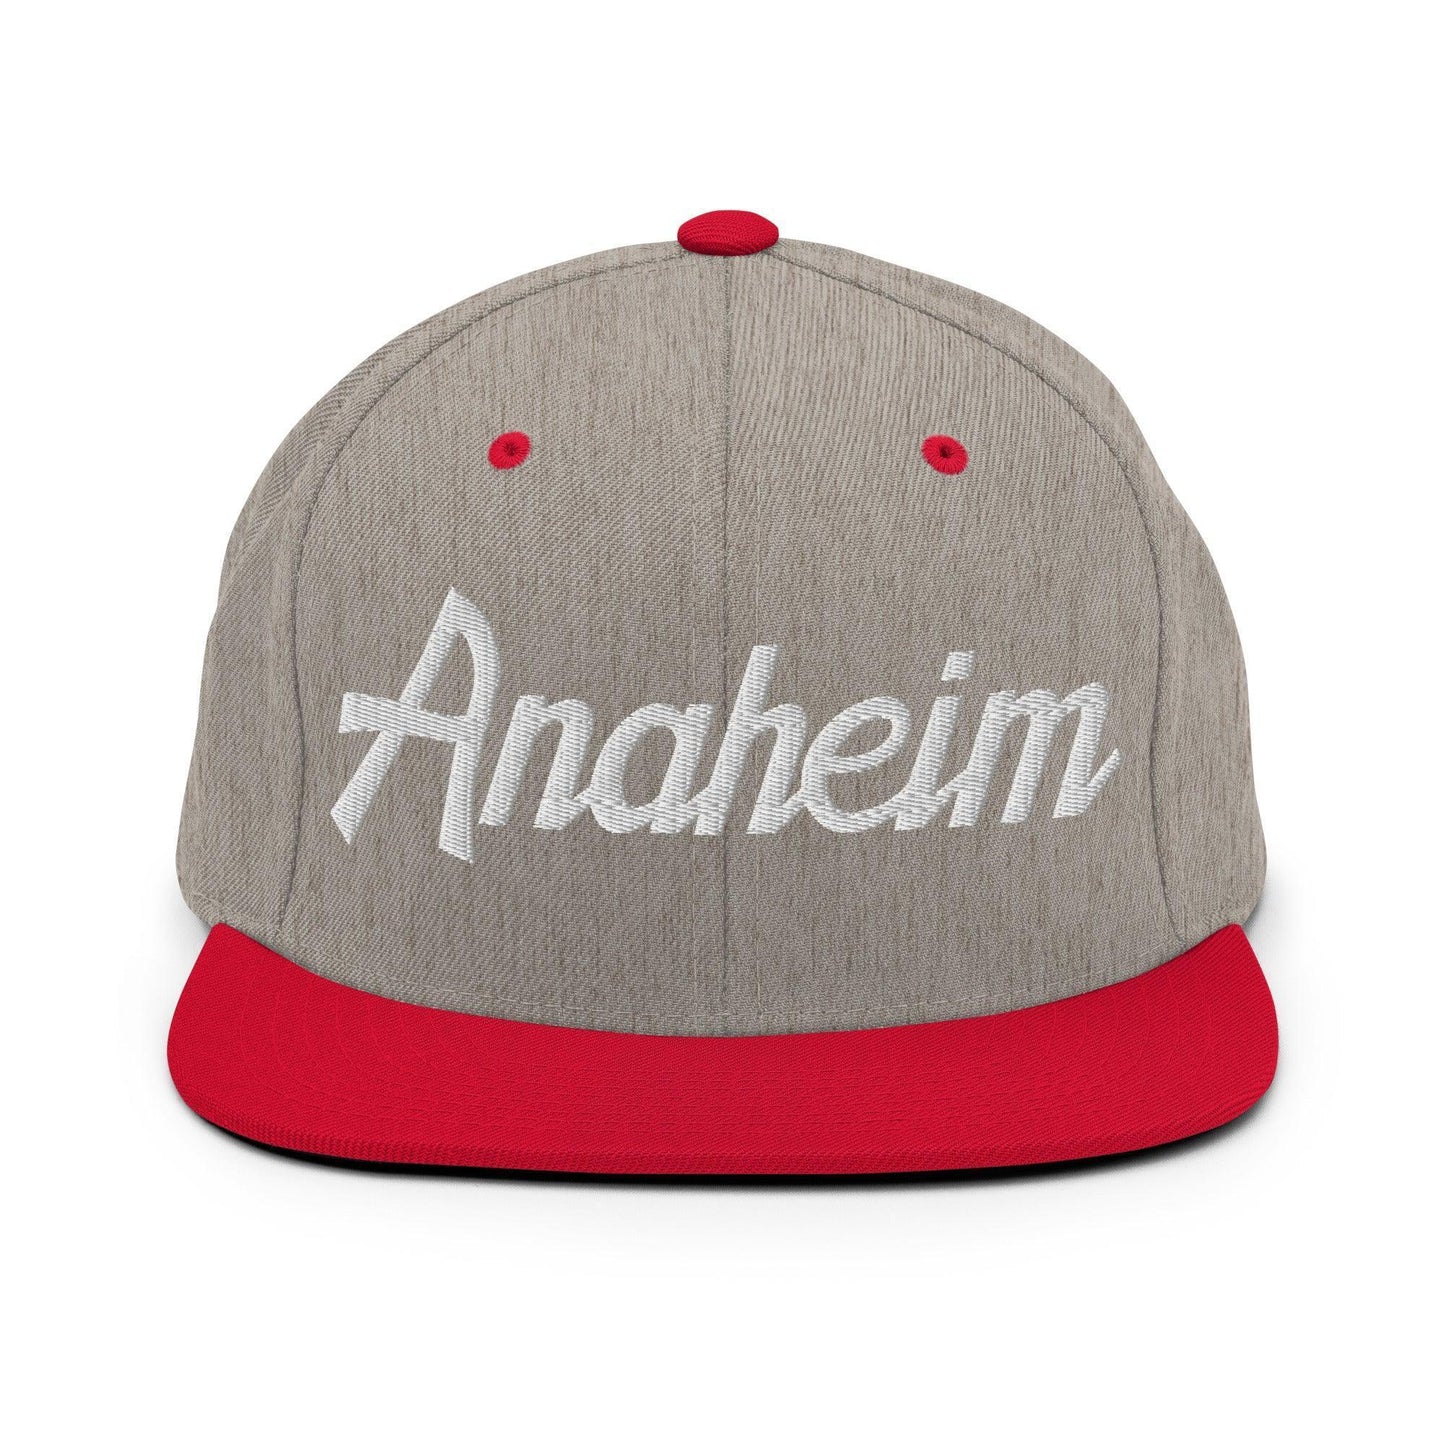 Anaheim Script Snapback Hat Heather Grey/ Red